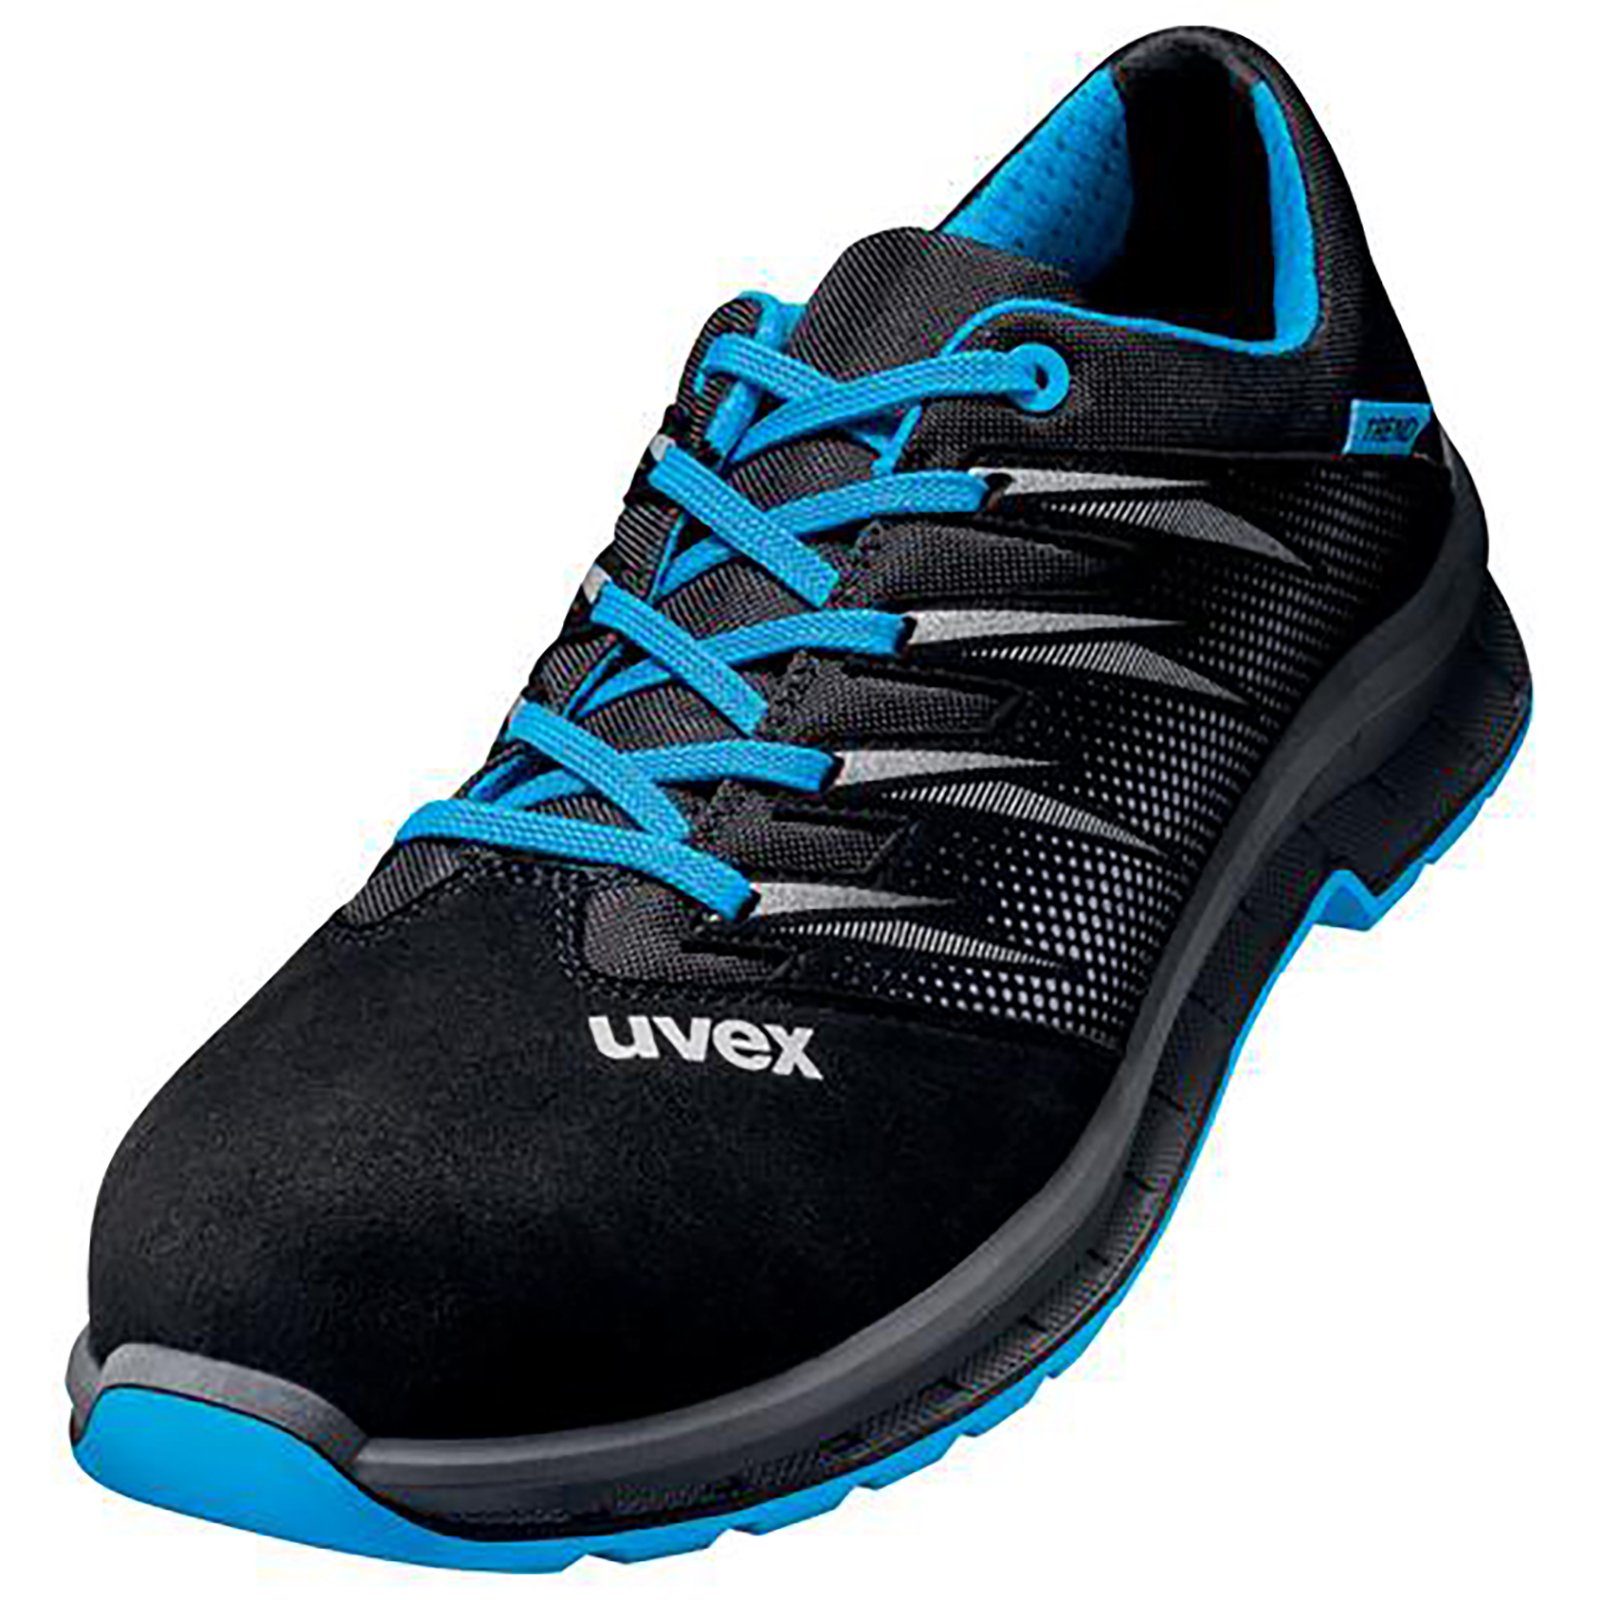 Uvex 2 trend Halbschuhe S2 blau, schwarz Weite 11 Sicherheitsschuh